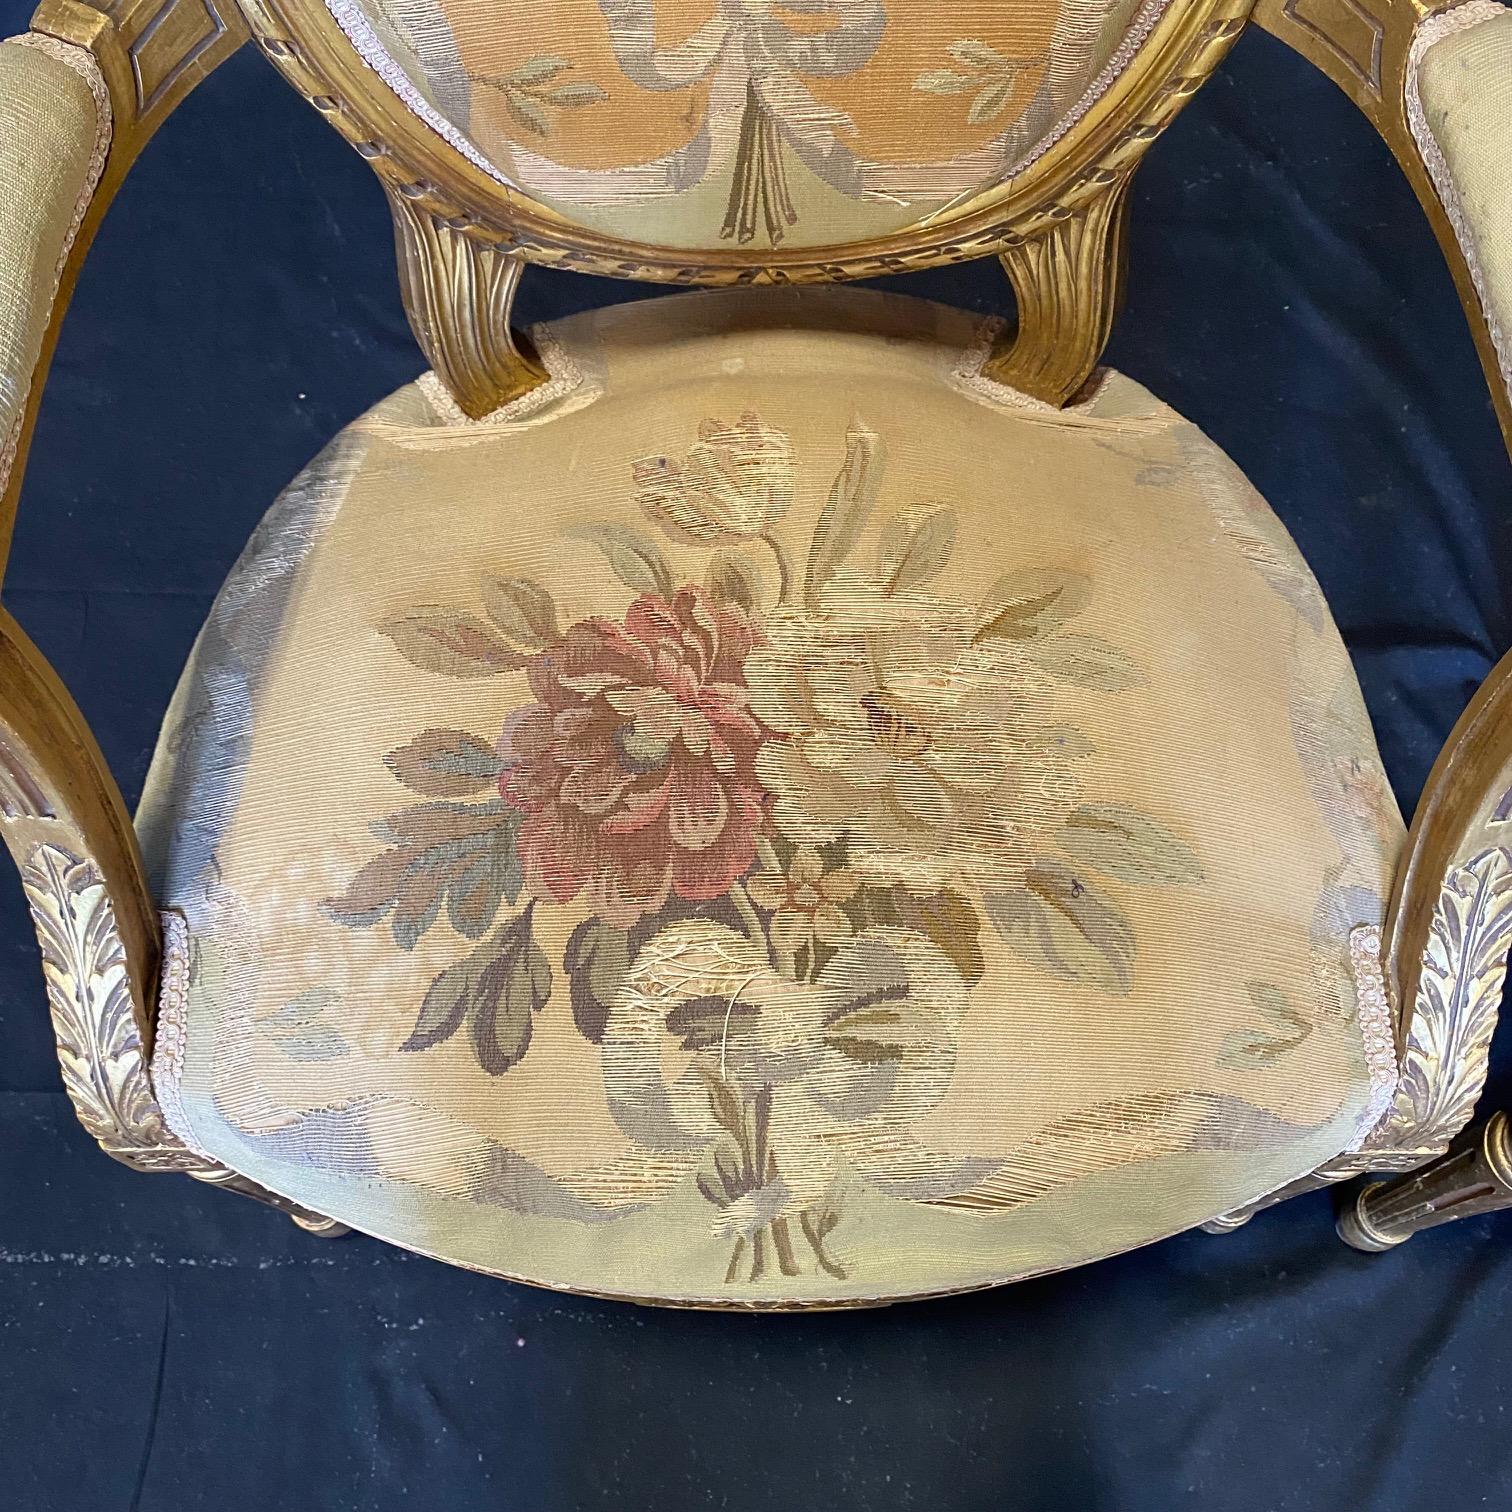 Ein prächtiges Paar französischer Louis-XVI-Sessel aus Nussbaumholz und reich gepolstert mit seltenen handgewebten Aubusson-Tapeten. Die Qualität der Aubusson-Wandteppiche ist wunderbar, aber wie erwartet, einige kleinere fadenscheinige Bereiche an